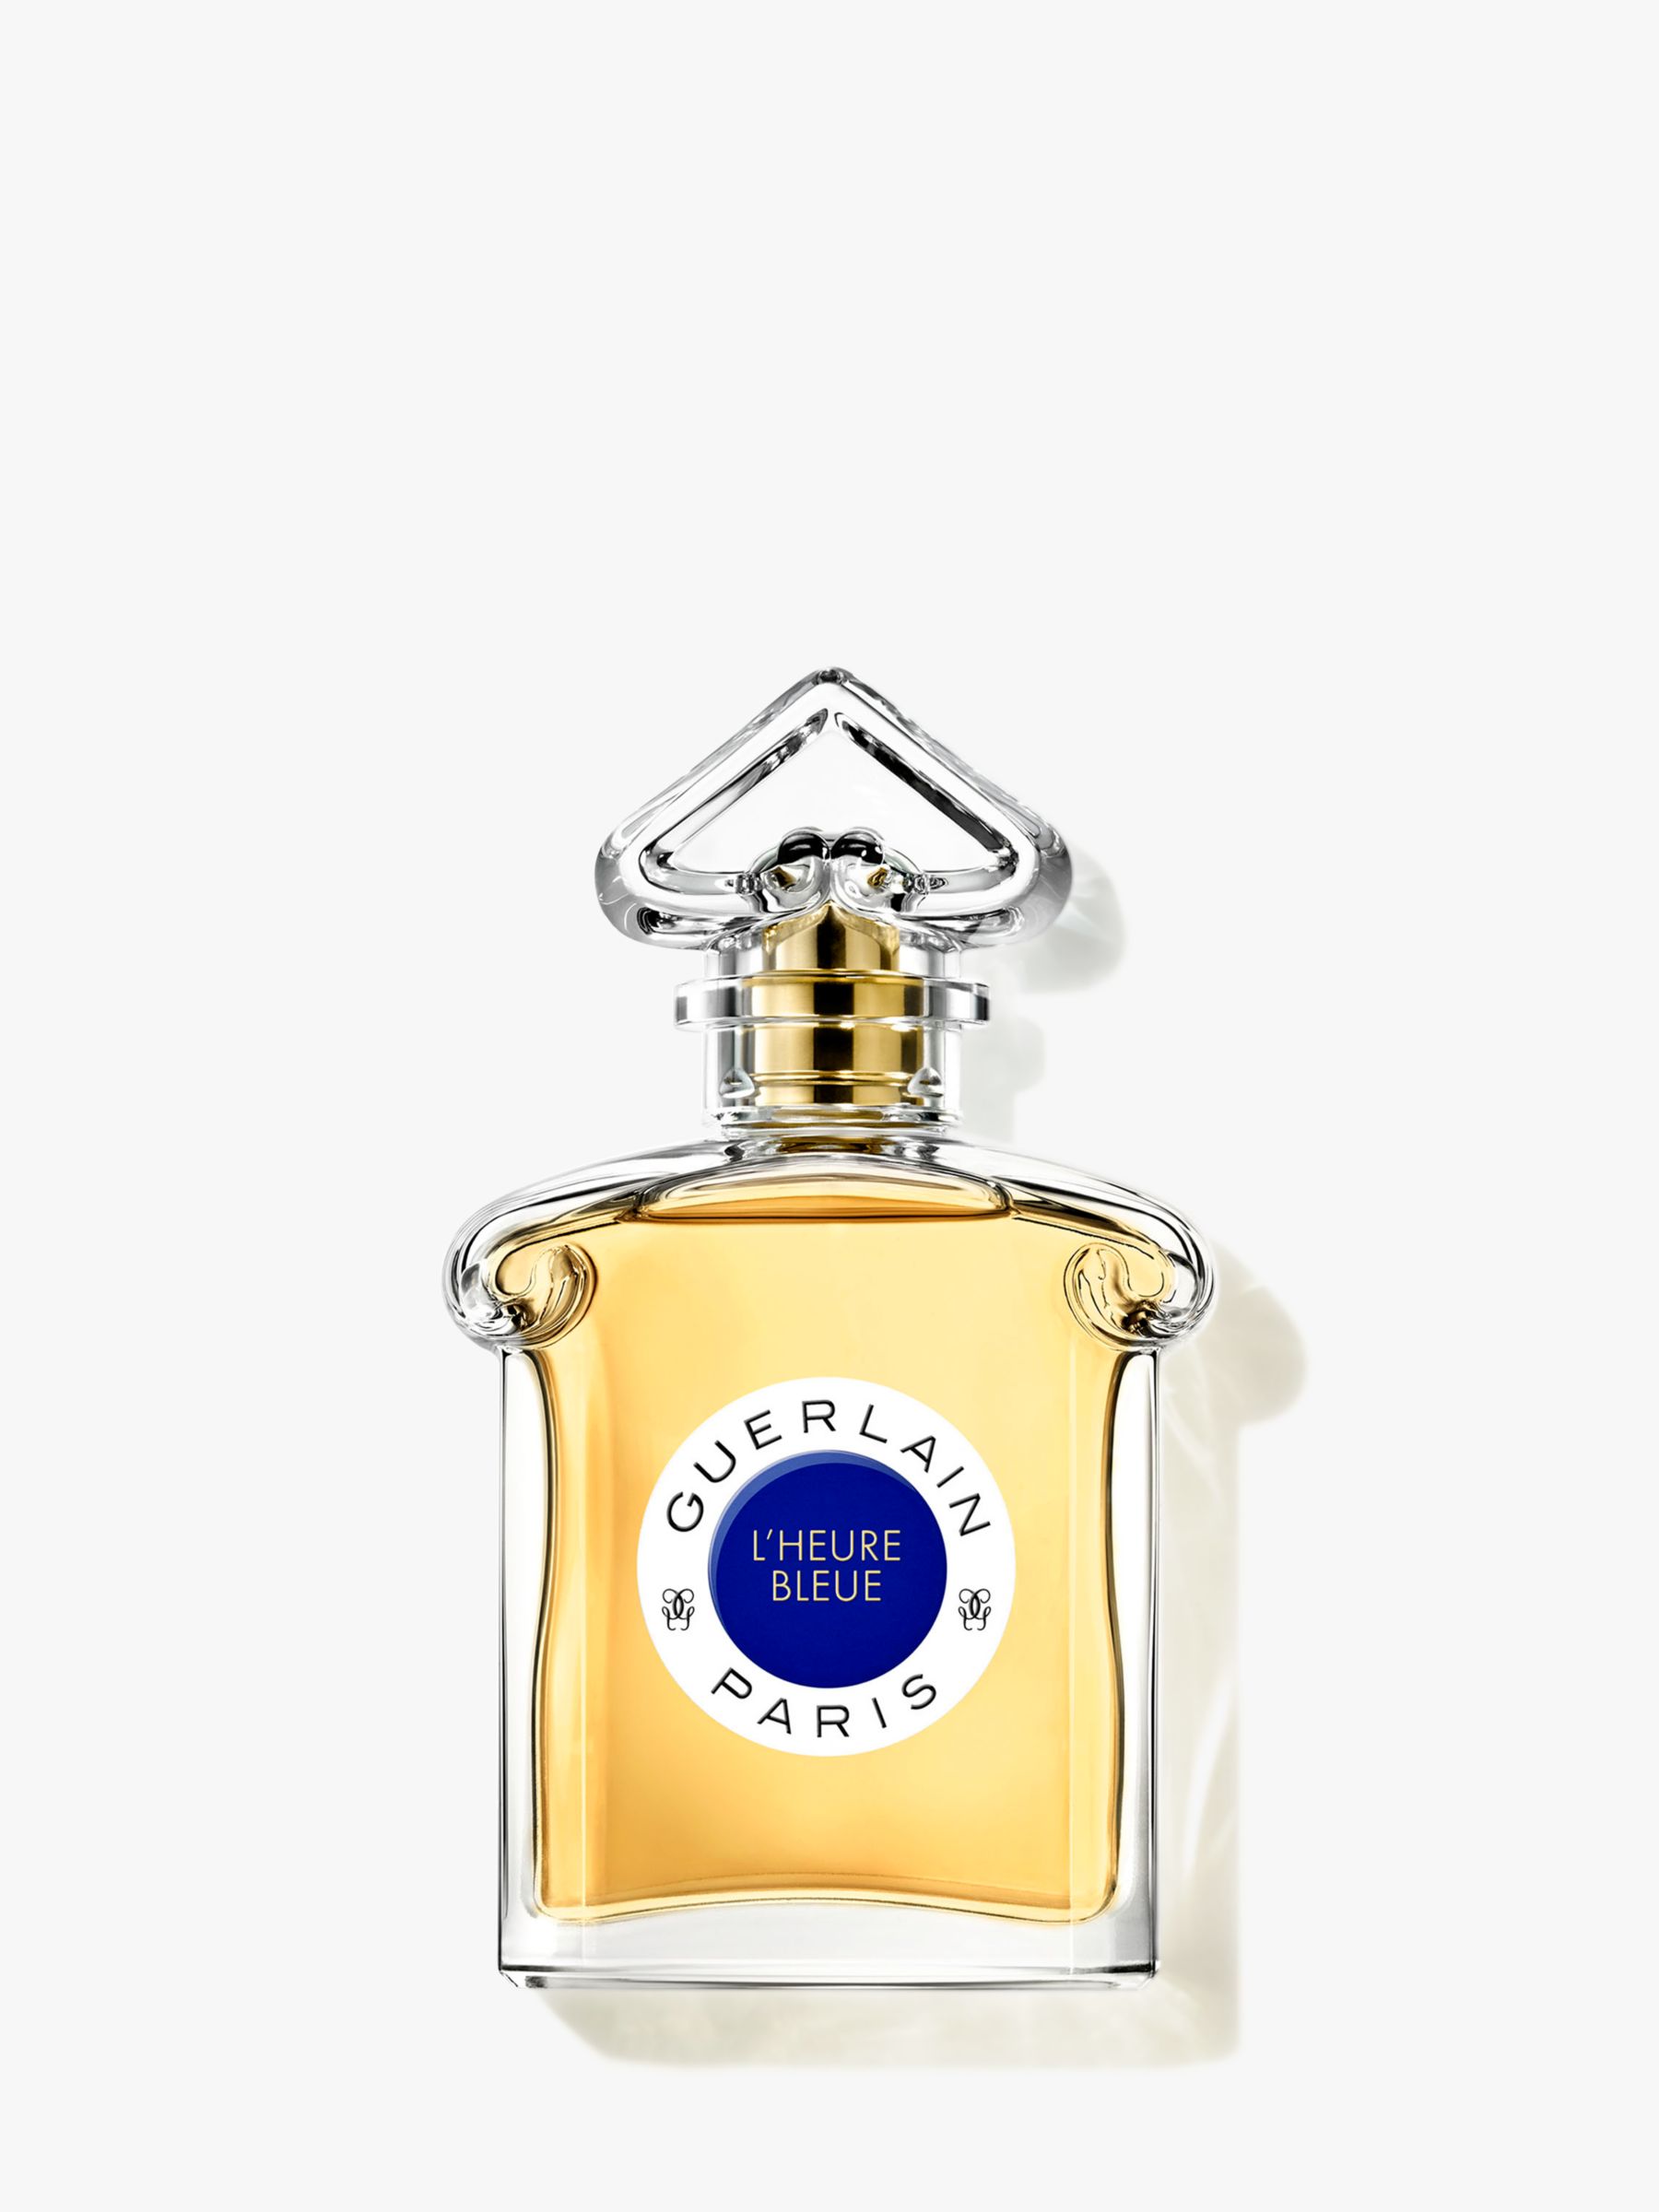 Guerlain L'Heure Bleue Eau De Parfum Spray 75 ml